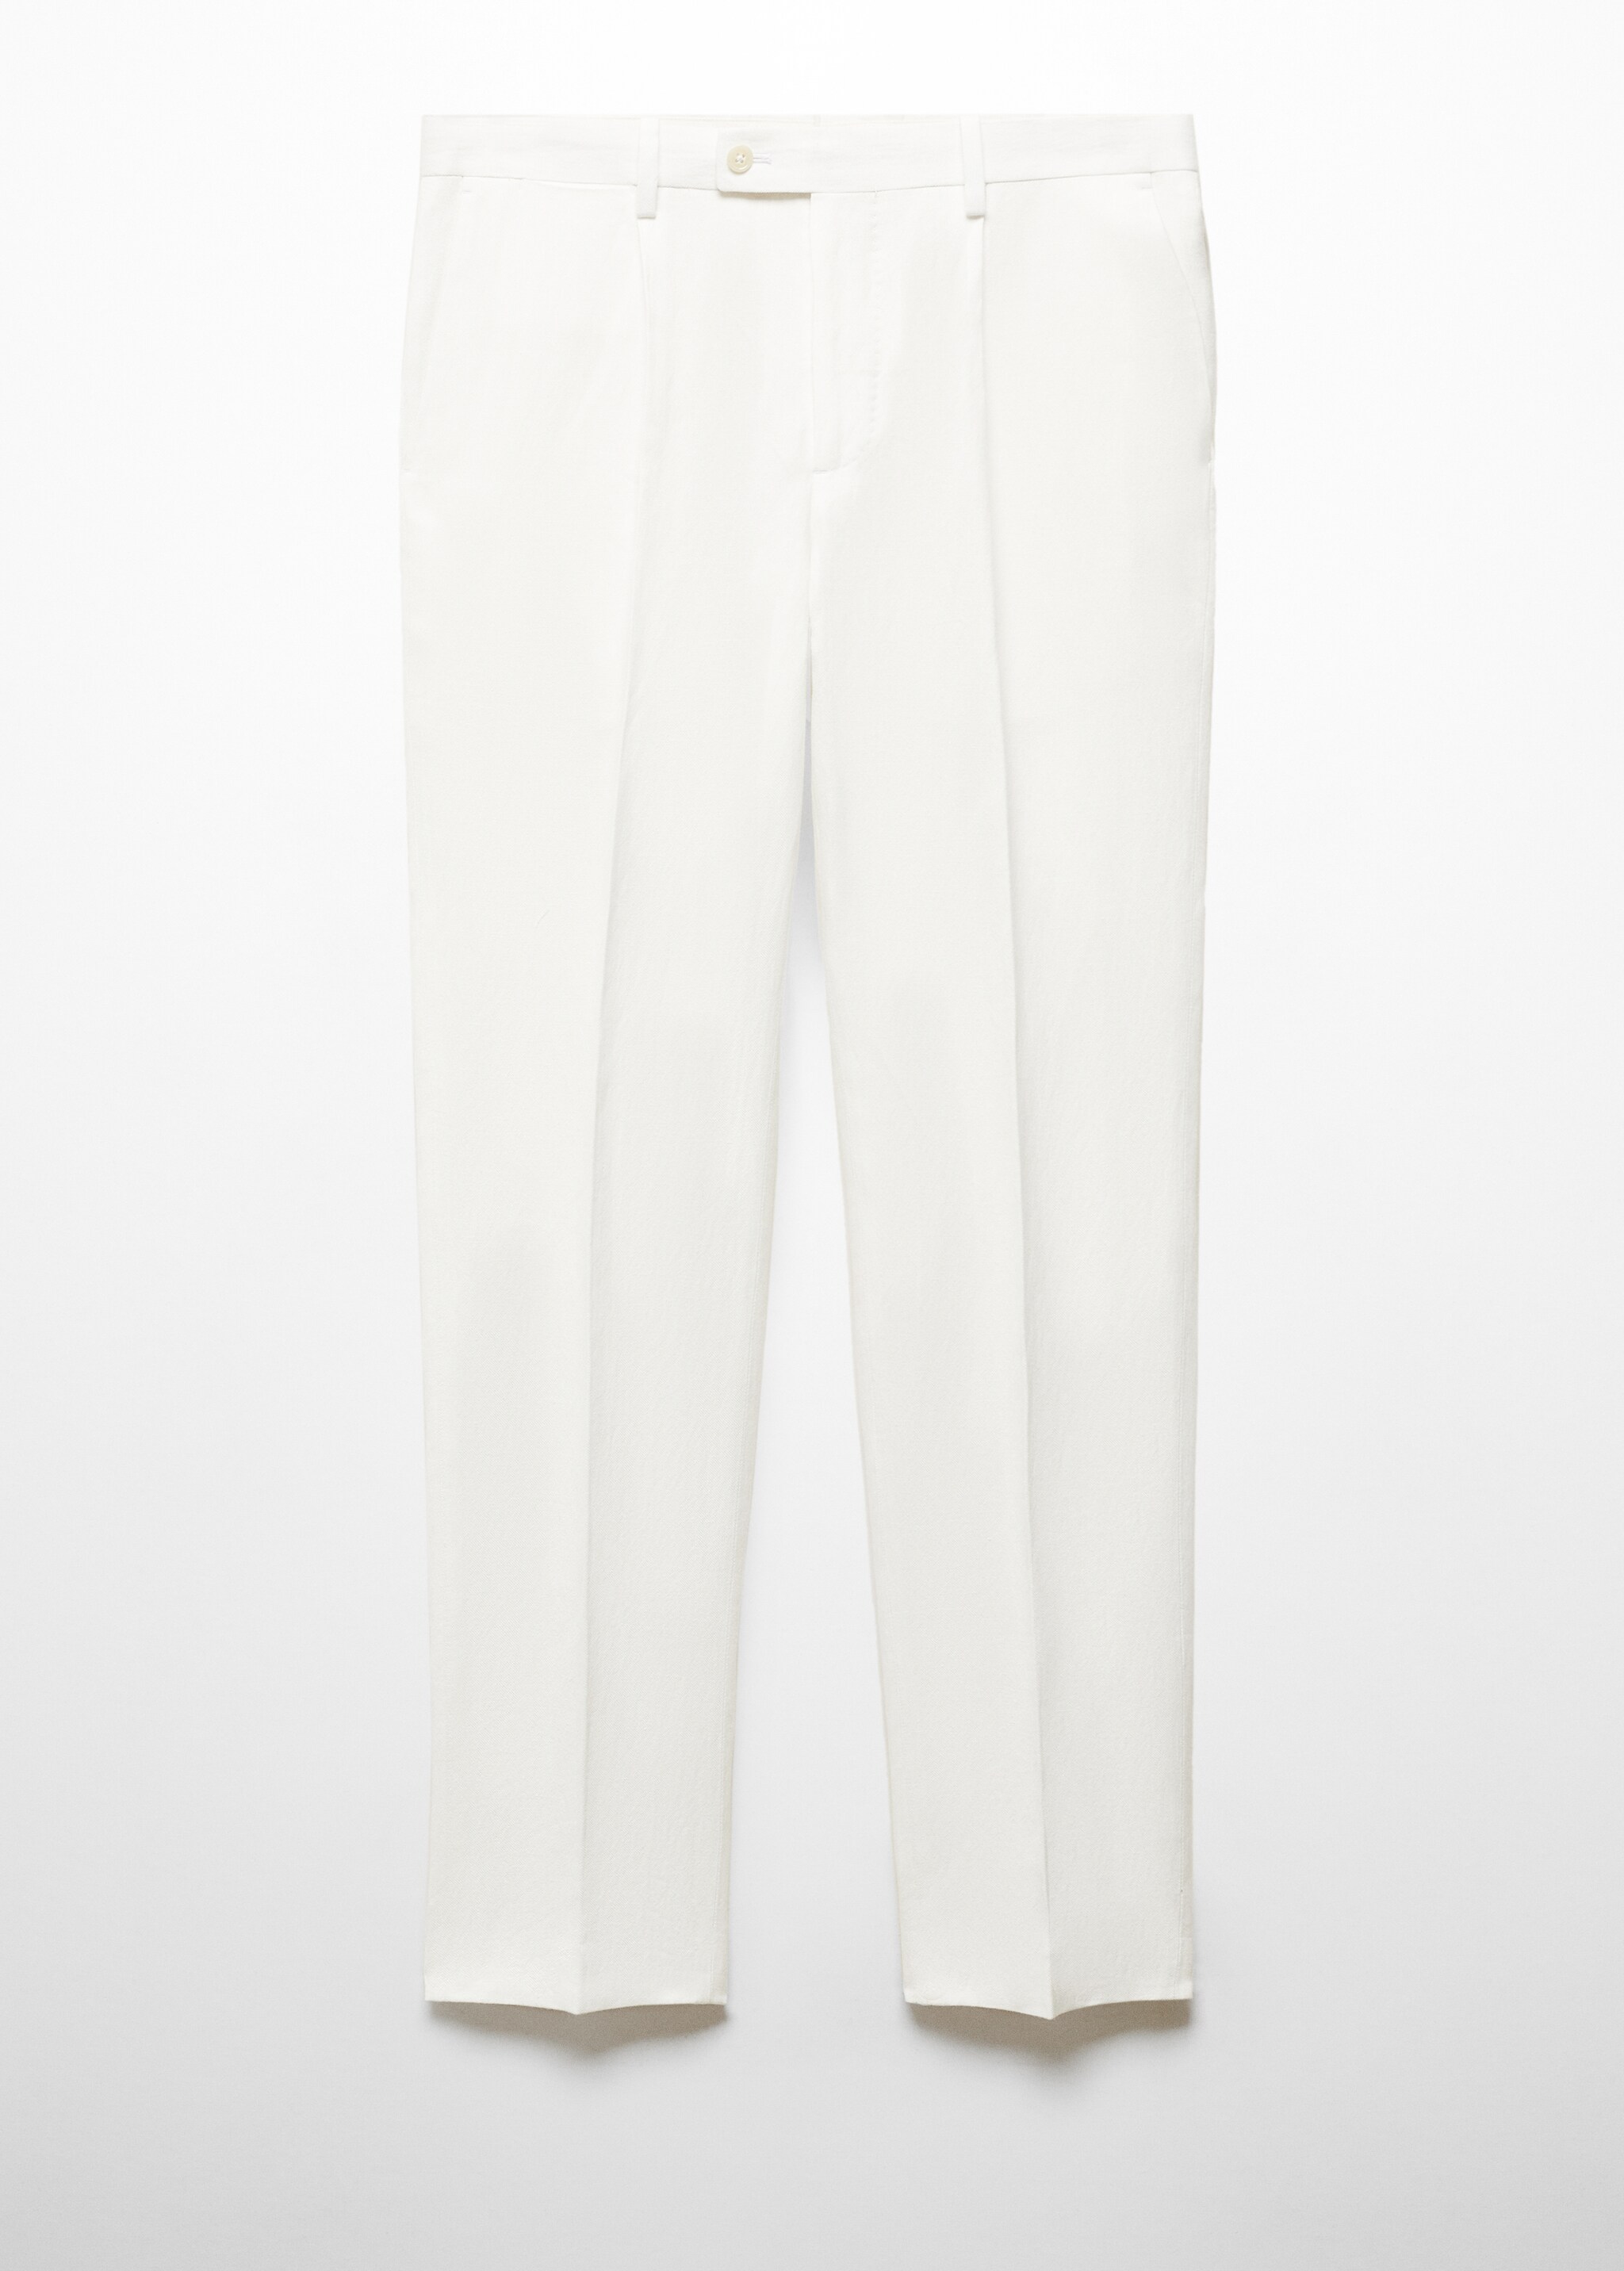 Pantalon costume slim-fit coton lin - Article sans modèle